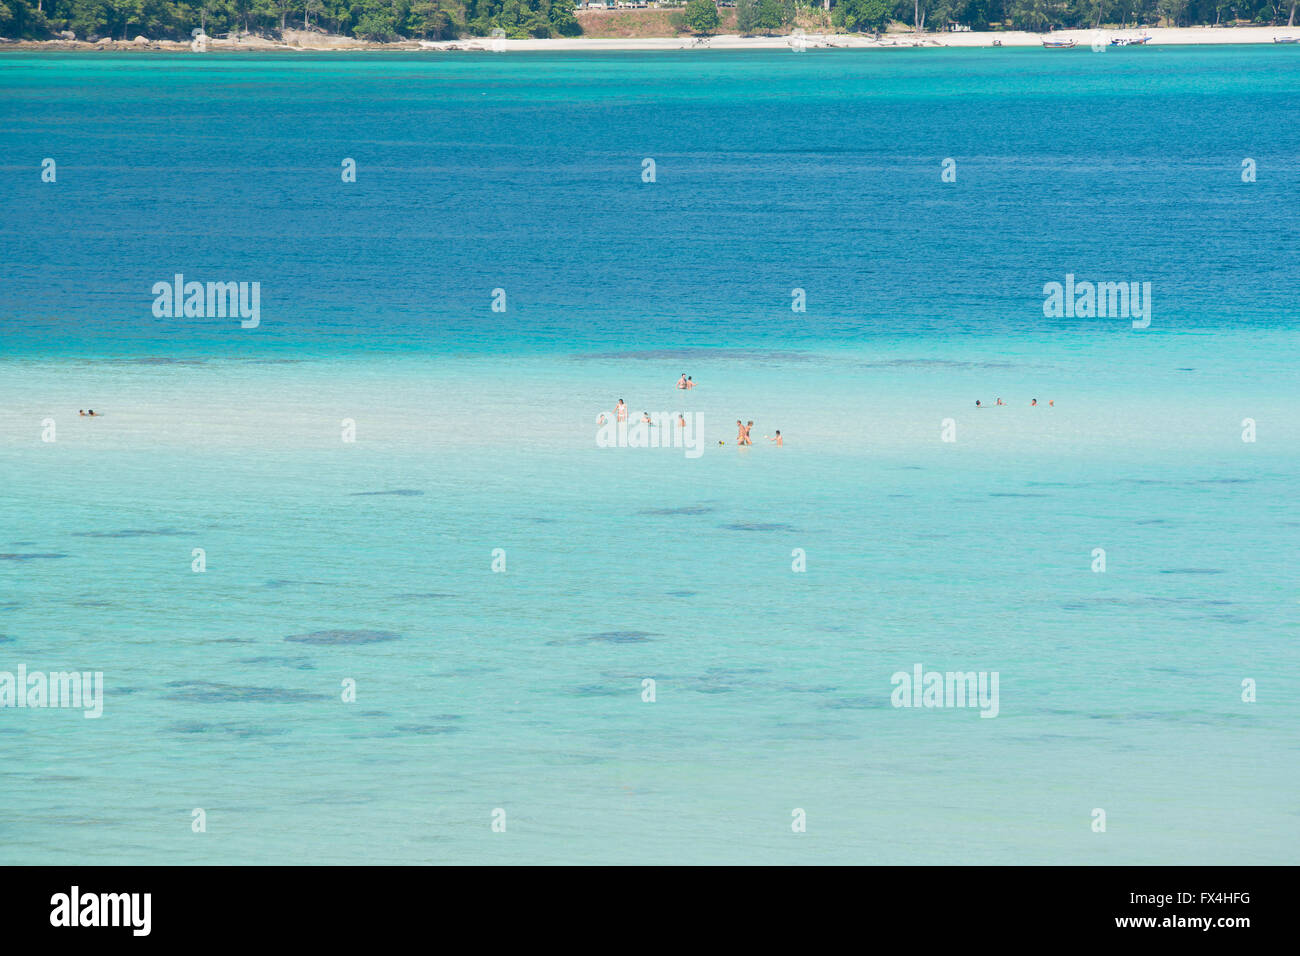 L'été, les voyages, vacances et maison de vacances Concept - vue aérienne de l'eau bleue claire de la mer Andaman à Phuket, Thaïlande Banque D'Images